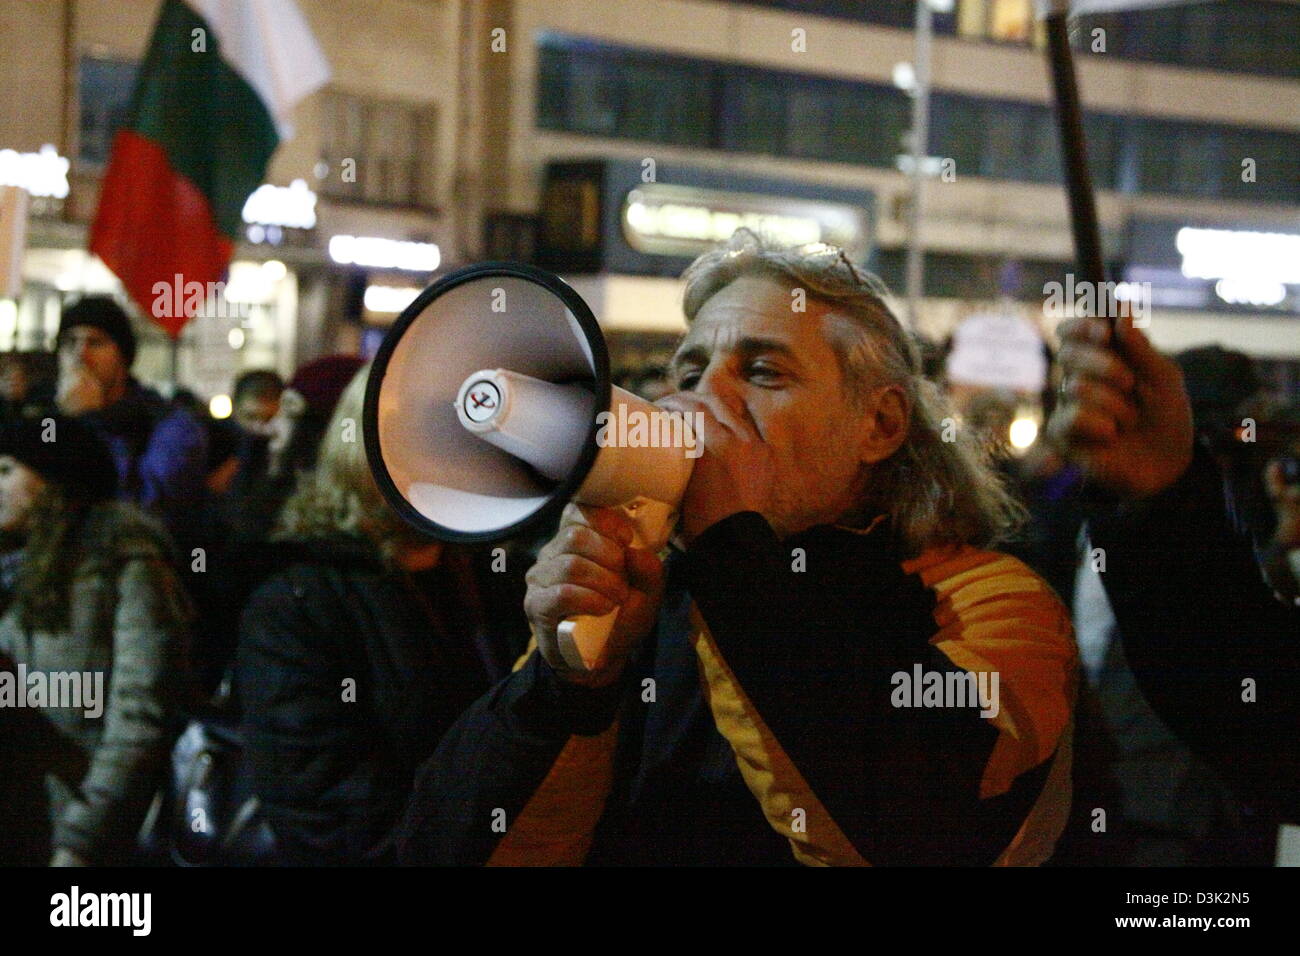 Sofia, Bulgarien. 20. Februar 2013.  Demonstrator Geschrei Protest Parolen durch ein Megaphon. Bildnachweis: Johann Brandstatter / Alamy Live News Stockfoto